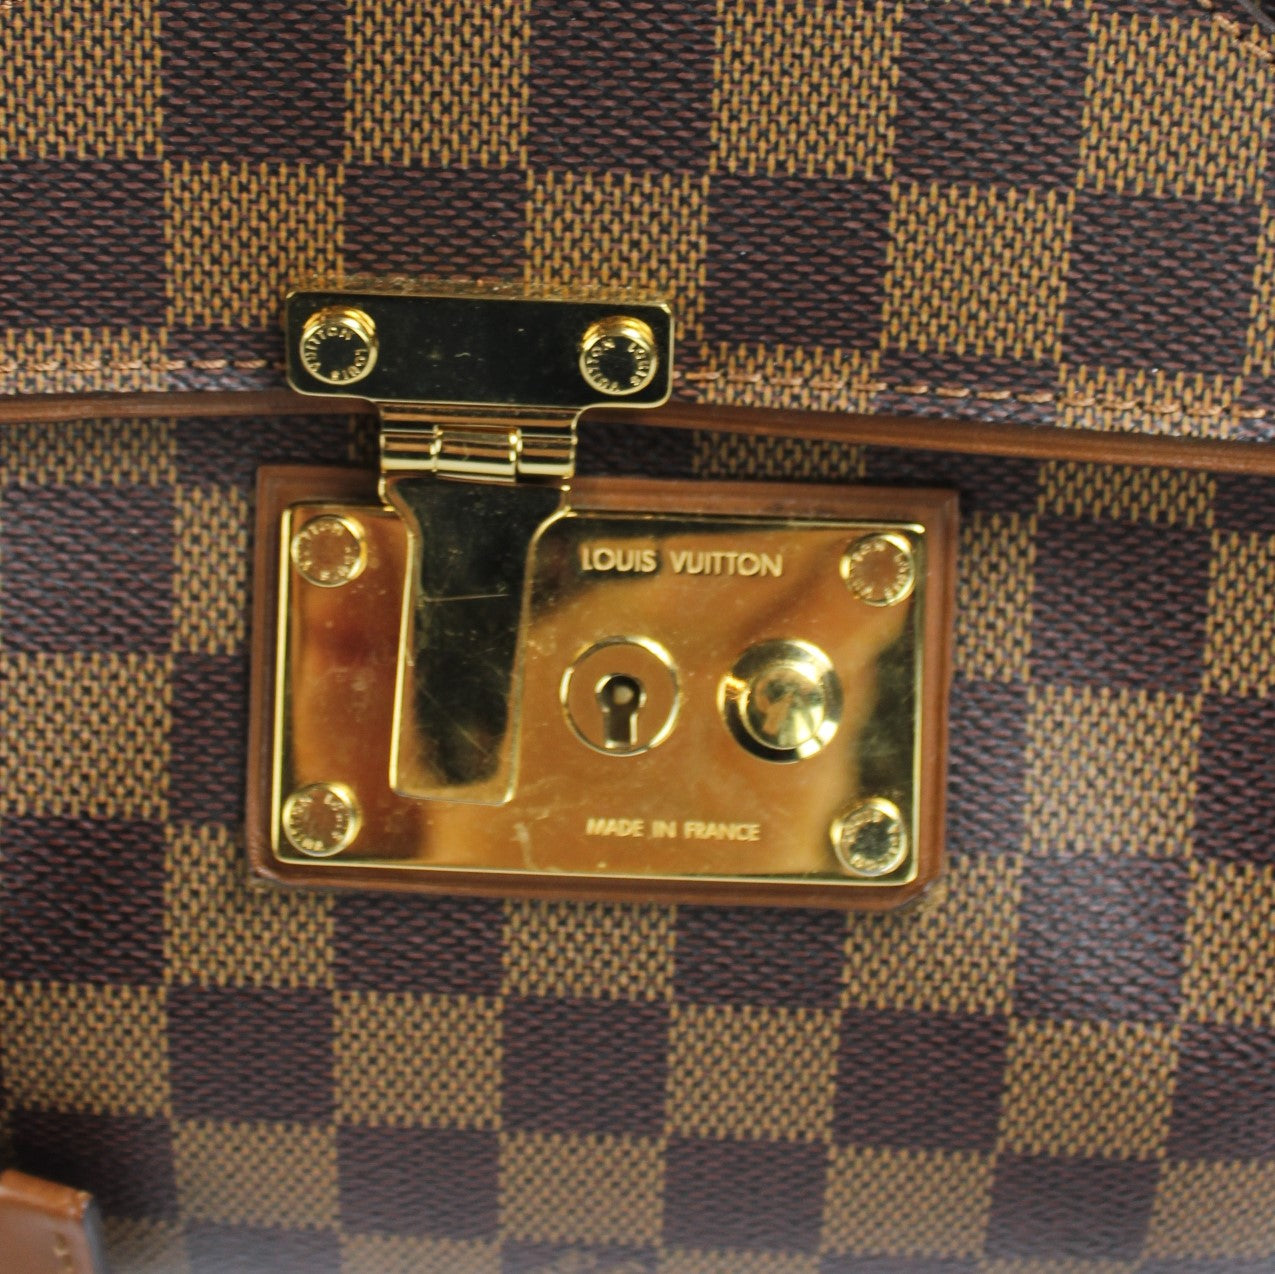 Ascot Damier Ebene (PL) – Keeks Designer Handbags